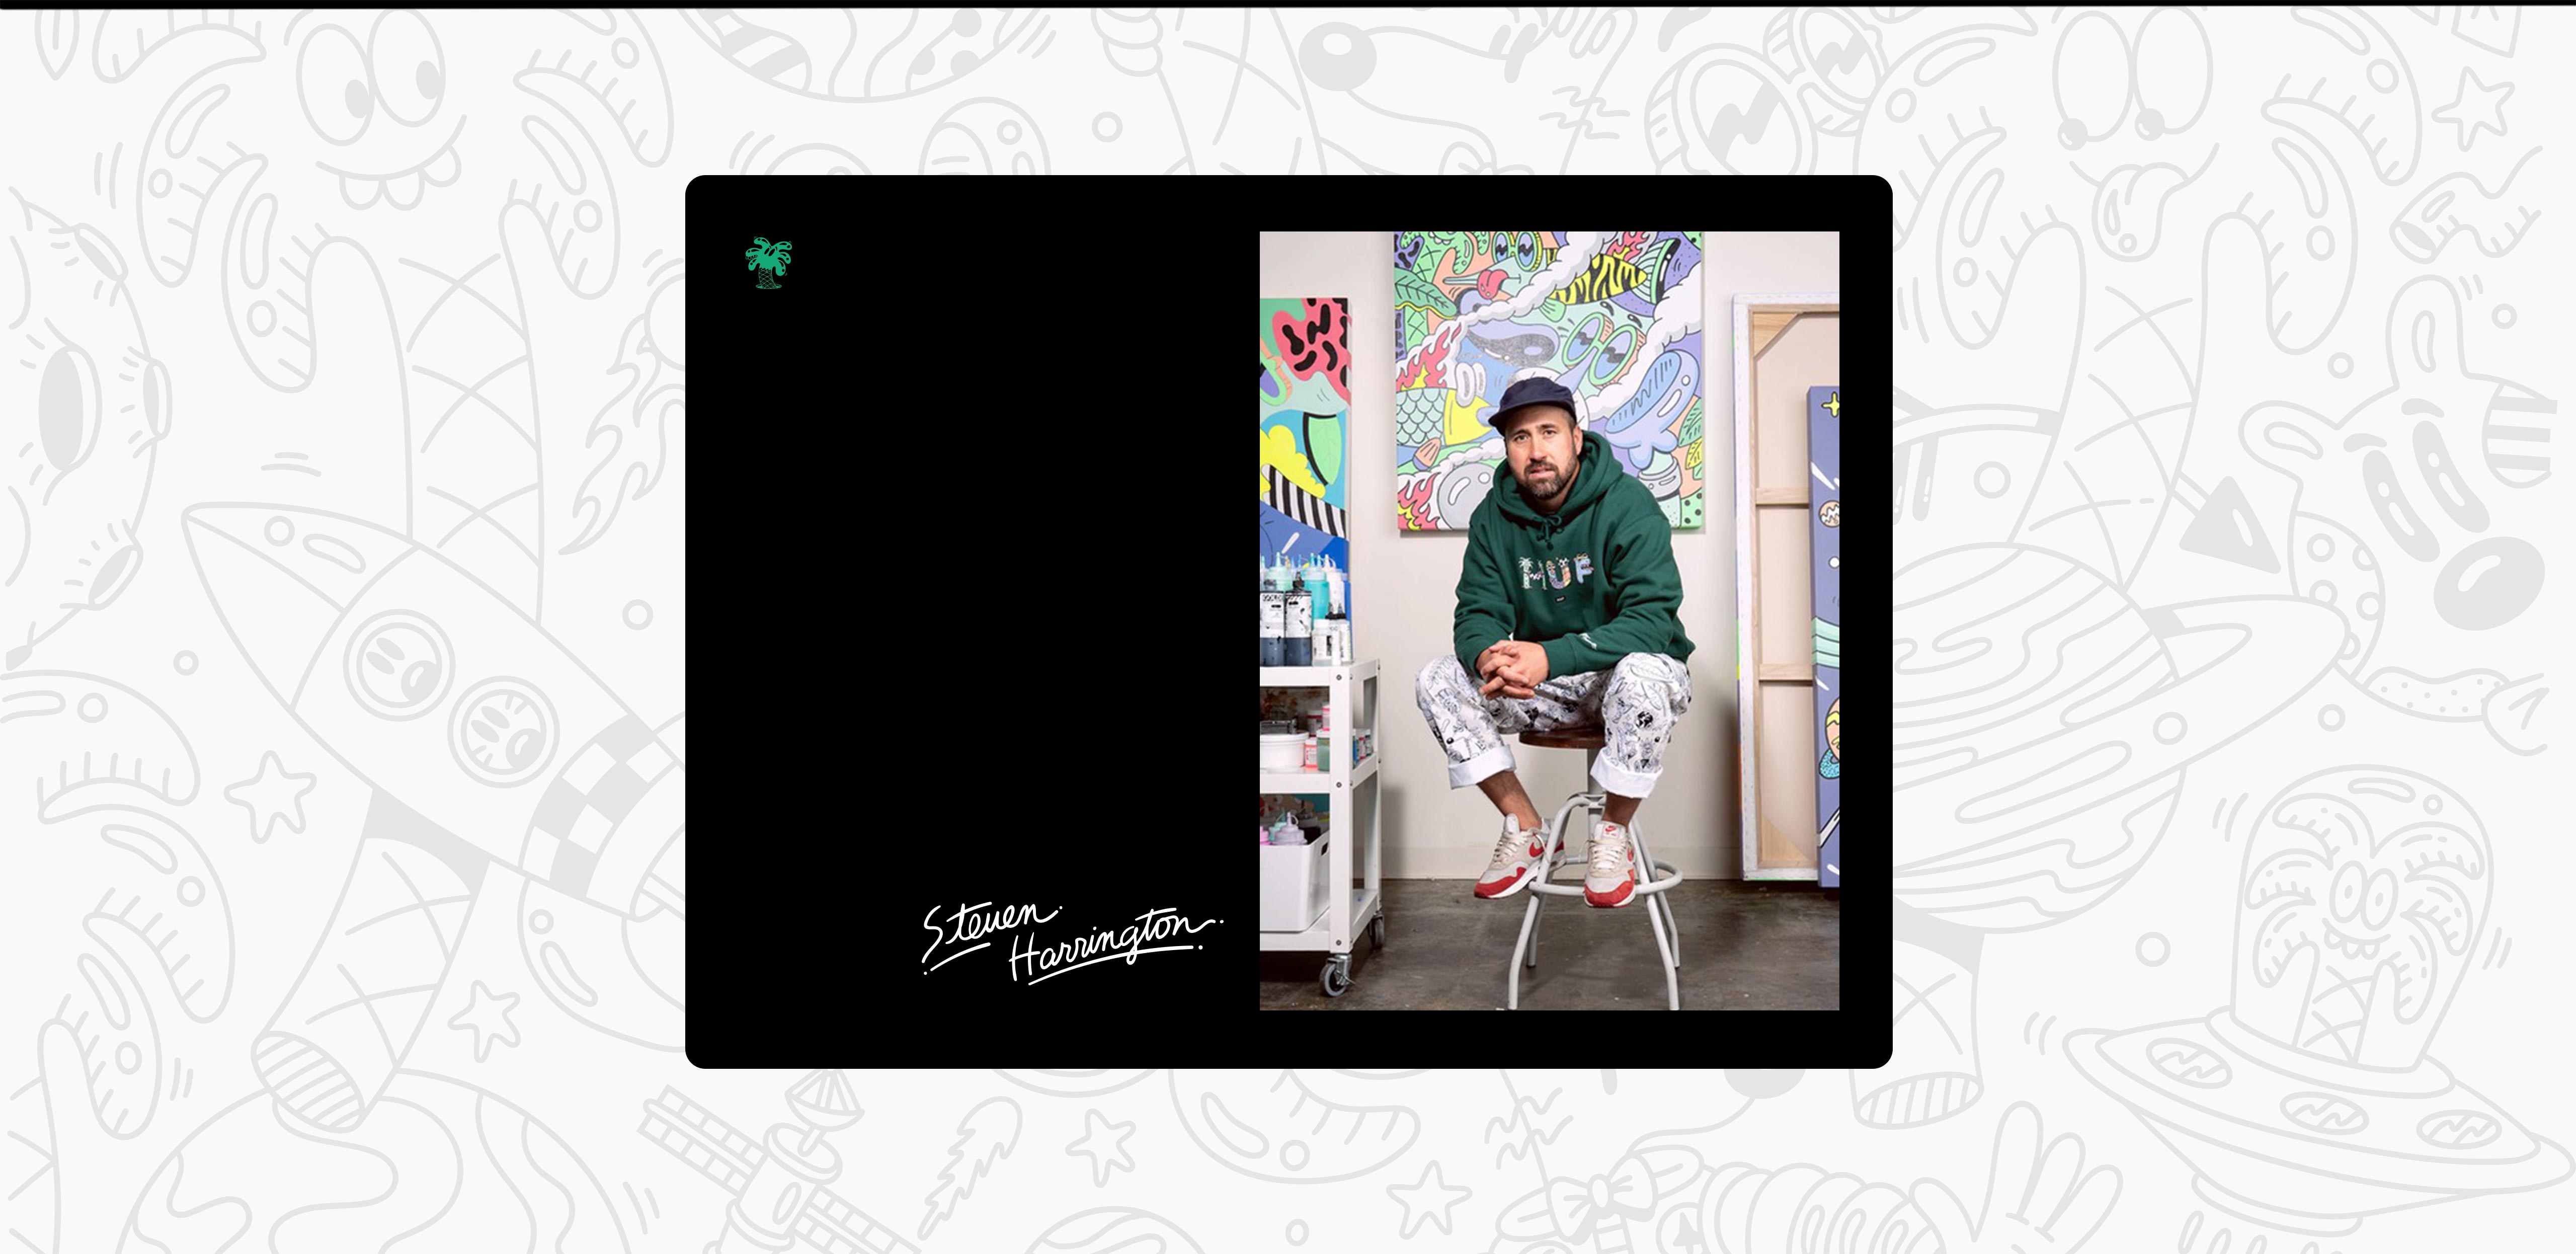 Steven Harrington est photographié dans un sweat à capuche vert. Il est assis sur un tabouret devant l'une de ses œuvres d'art.